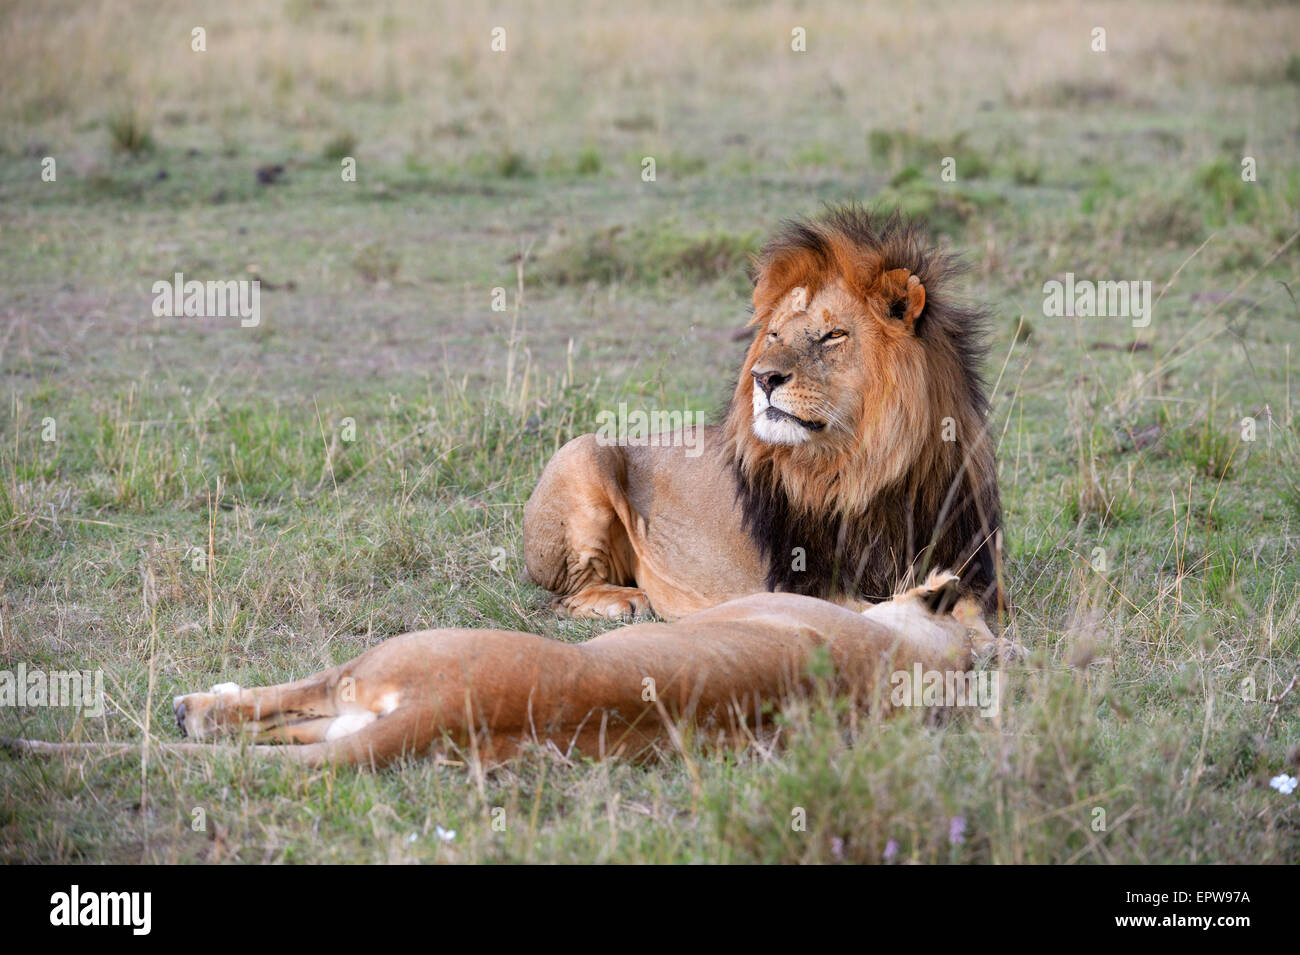 Les lions (Panthera leo), couple lion allongé dans l'herbe, l'homme garde sa compagne, Maasai Mara National Reserve, Kenya Banque D'Images